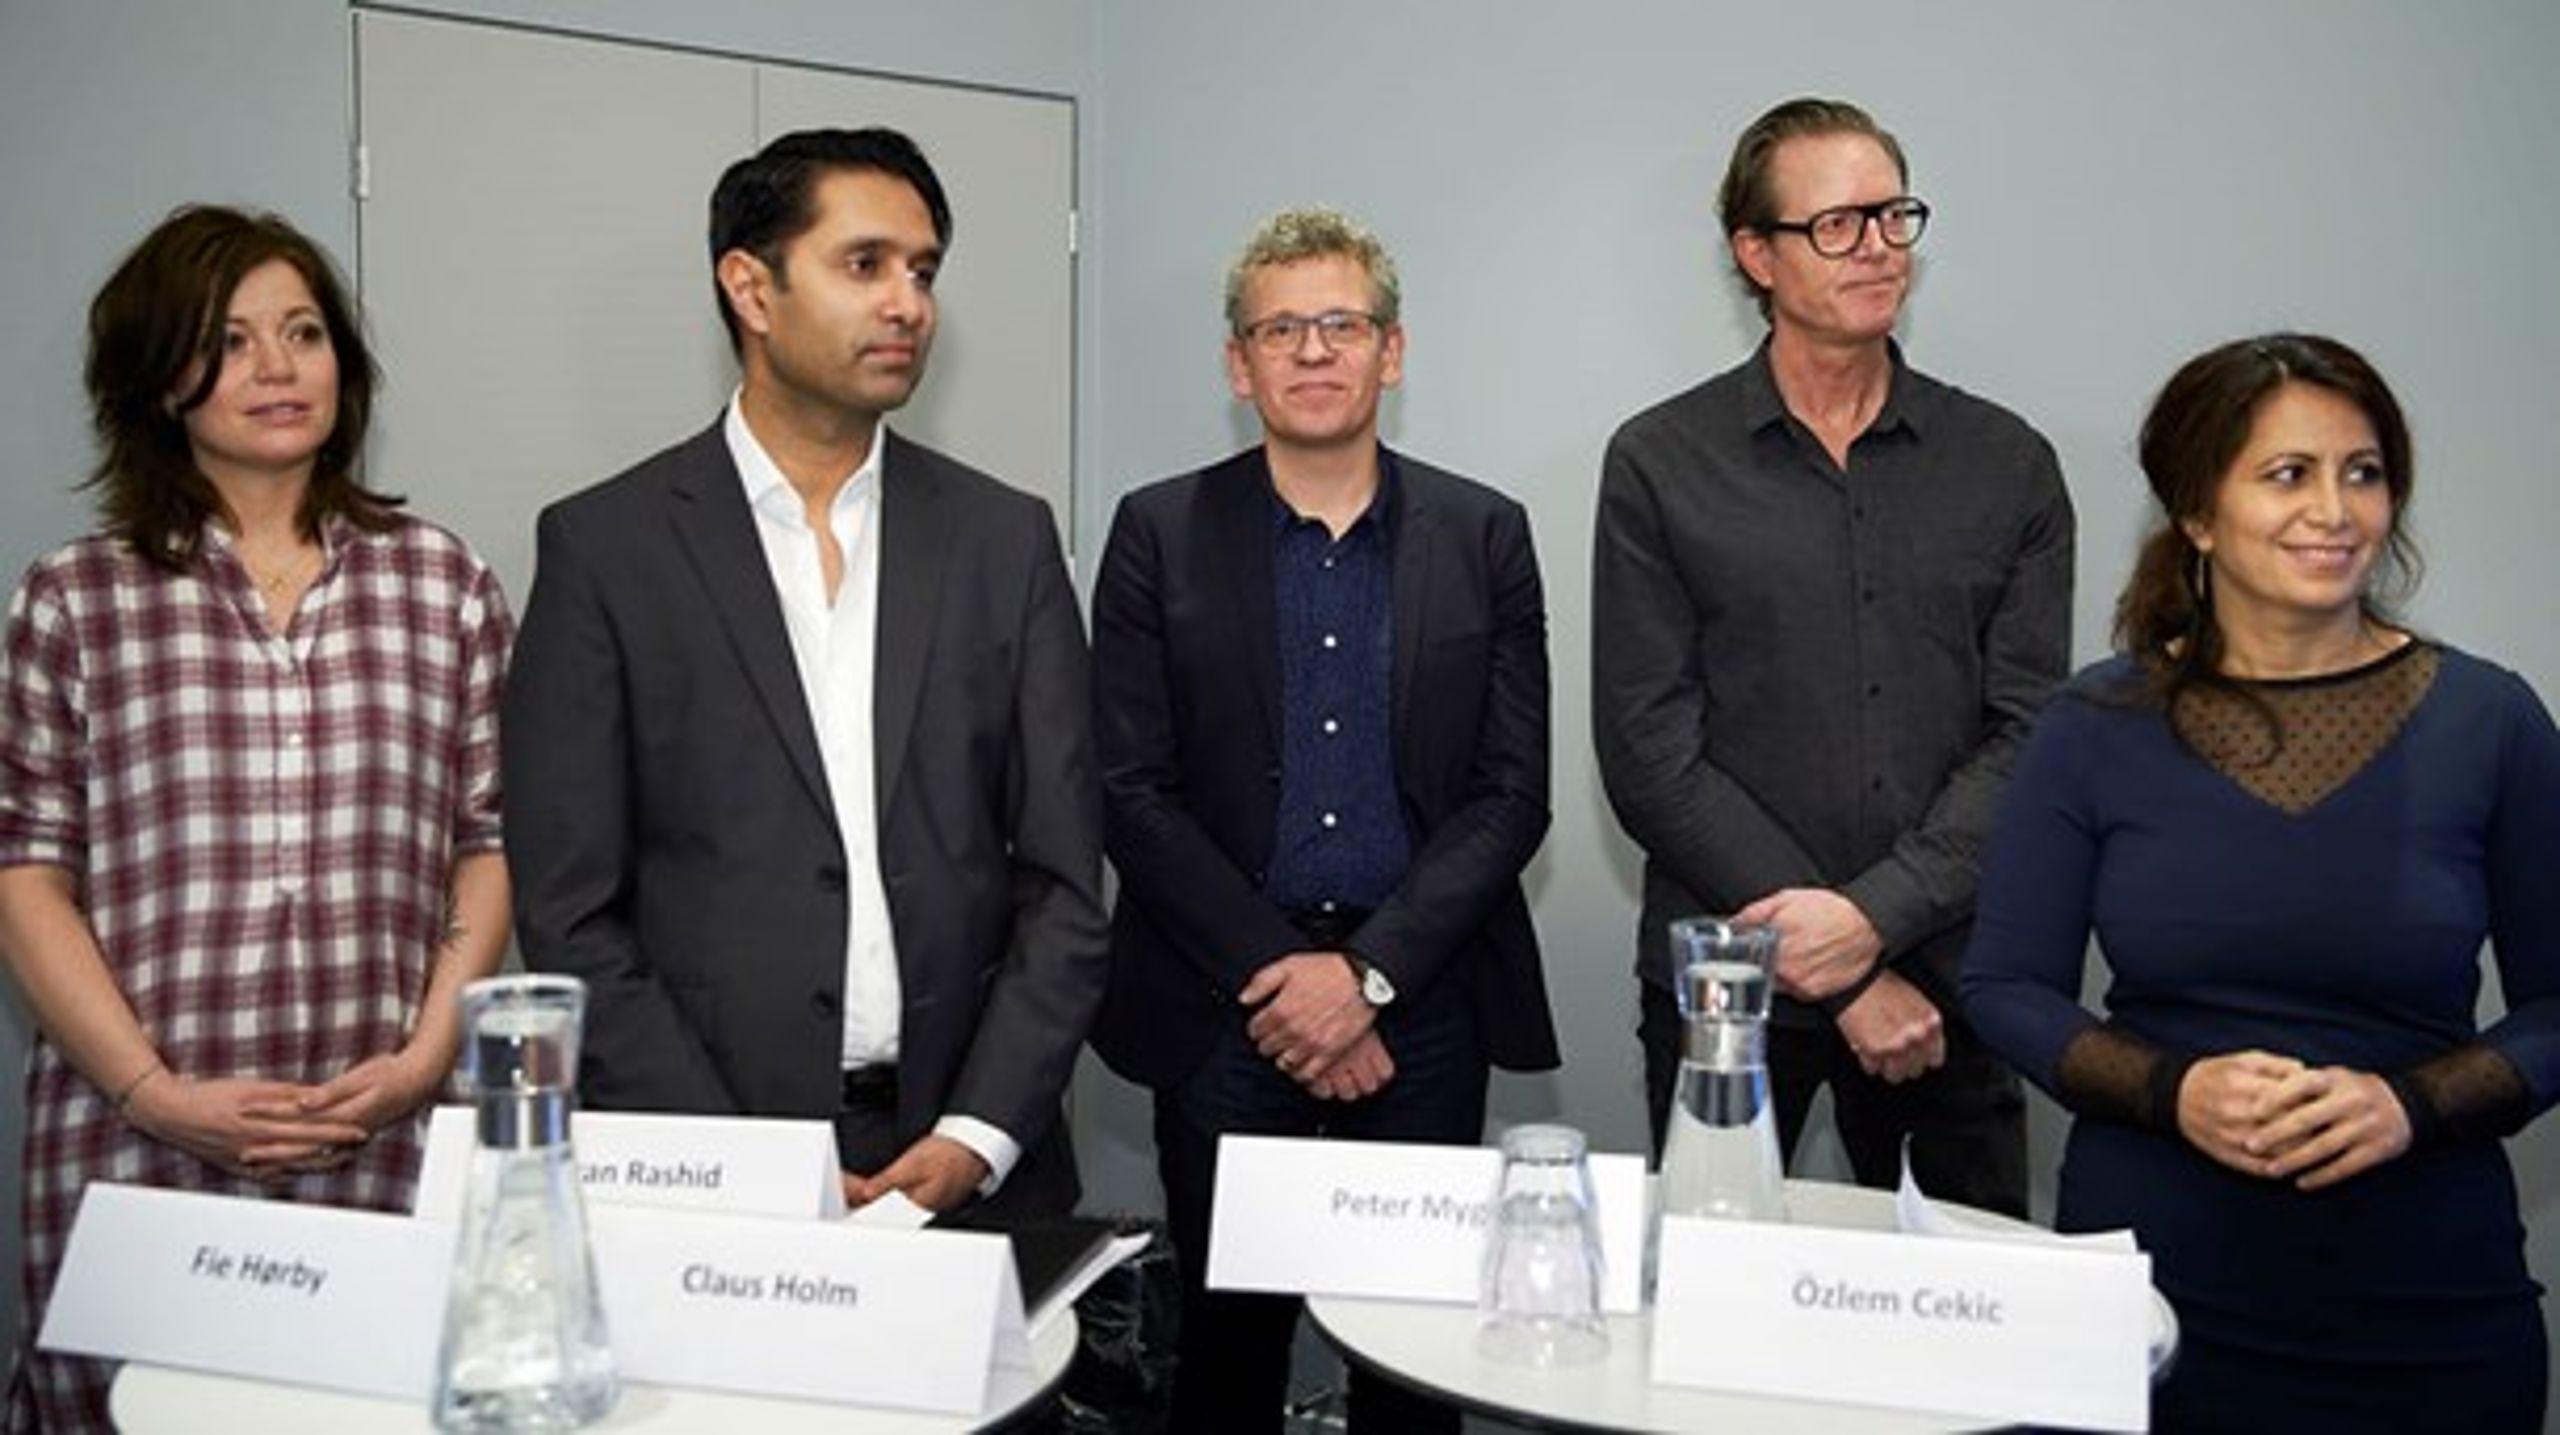 Det 11 mand høje opdragelses-panel består blandt andre af (fra venstre mod højre) Fie Hørby, Imran Rashid, Claus Holm, Peter Mygind og Özlem Cekic.